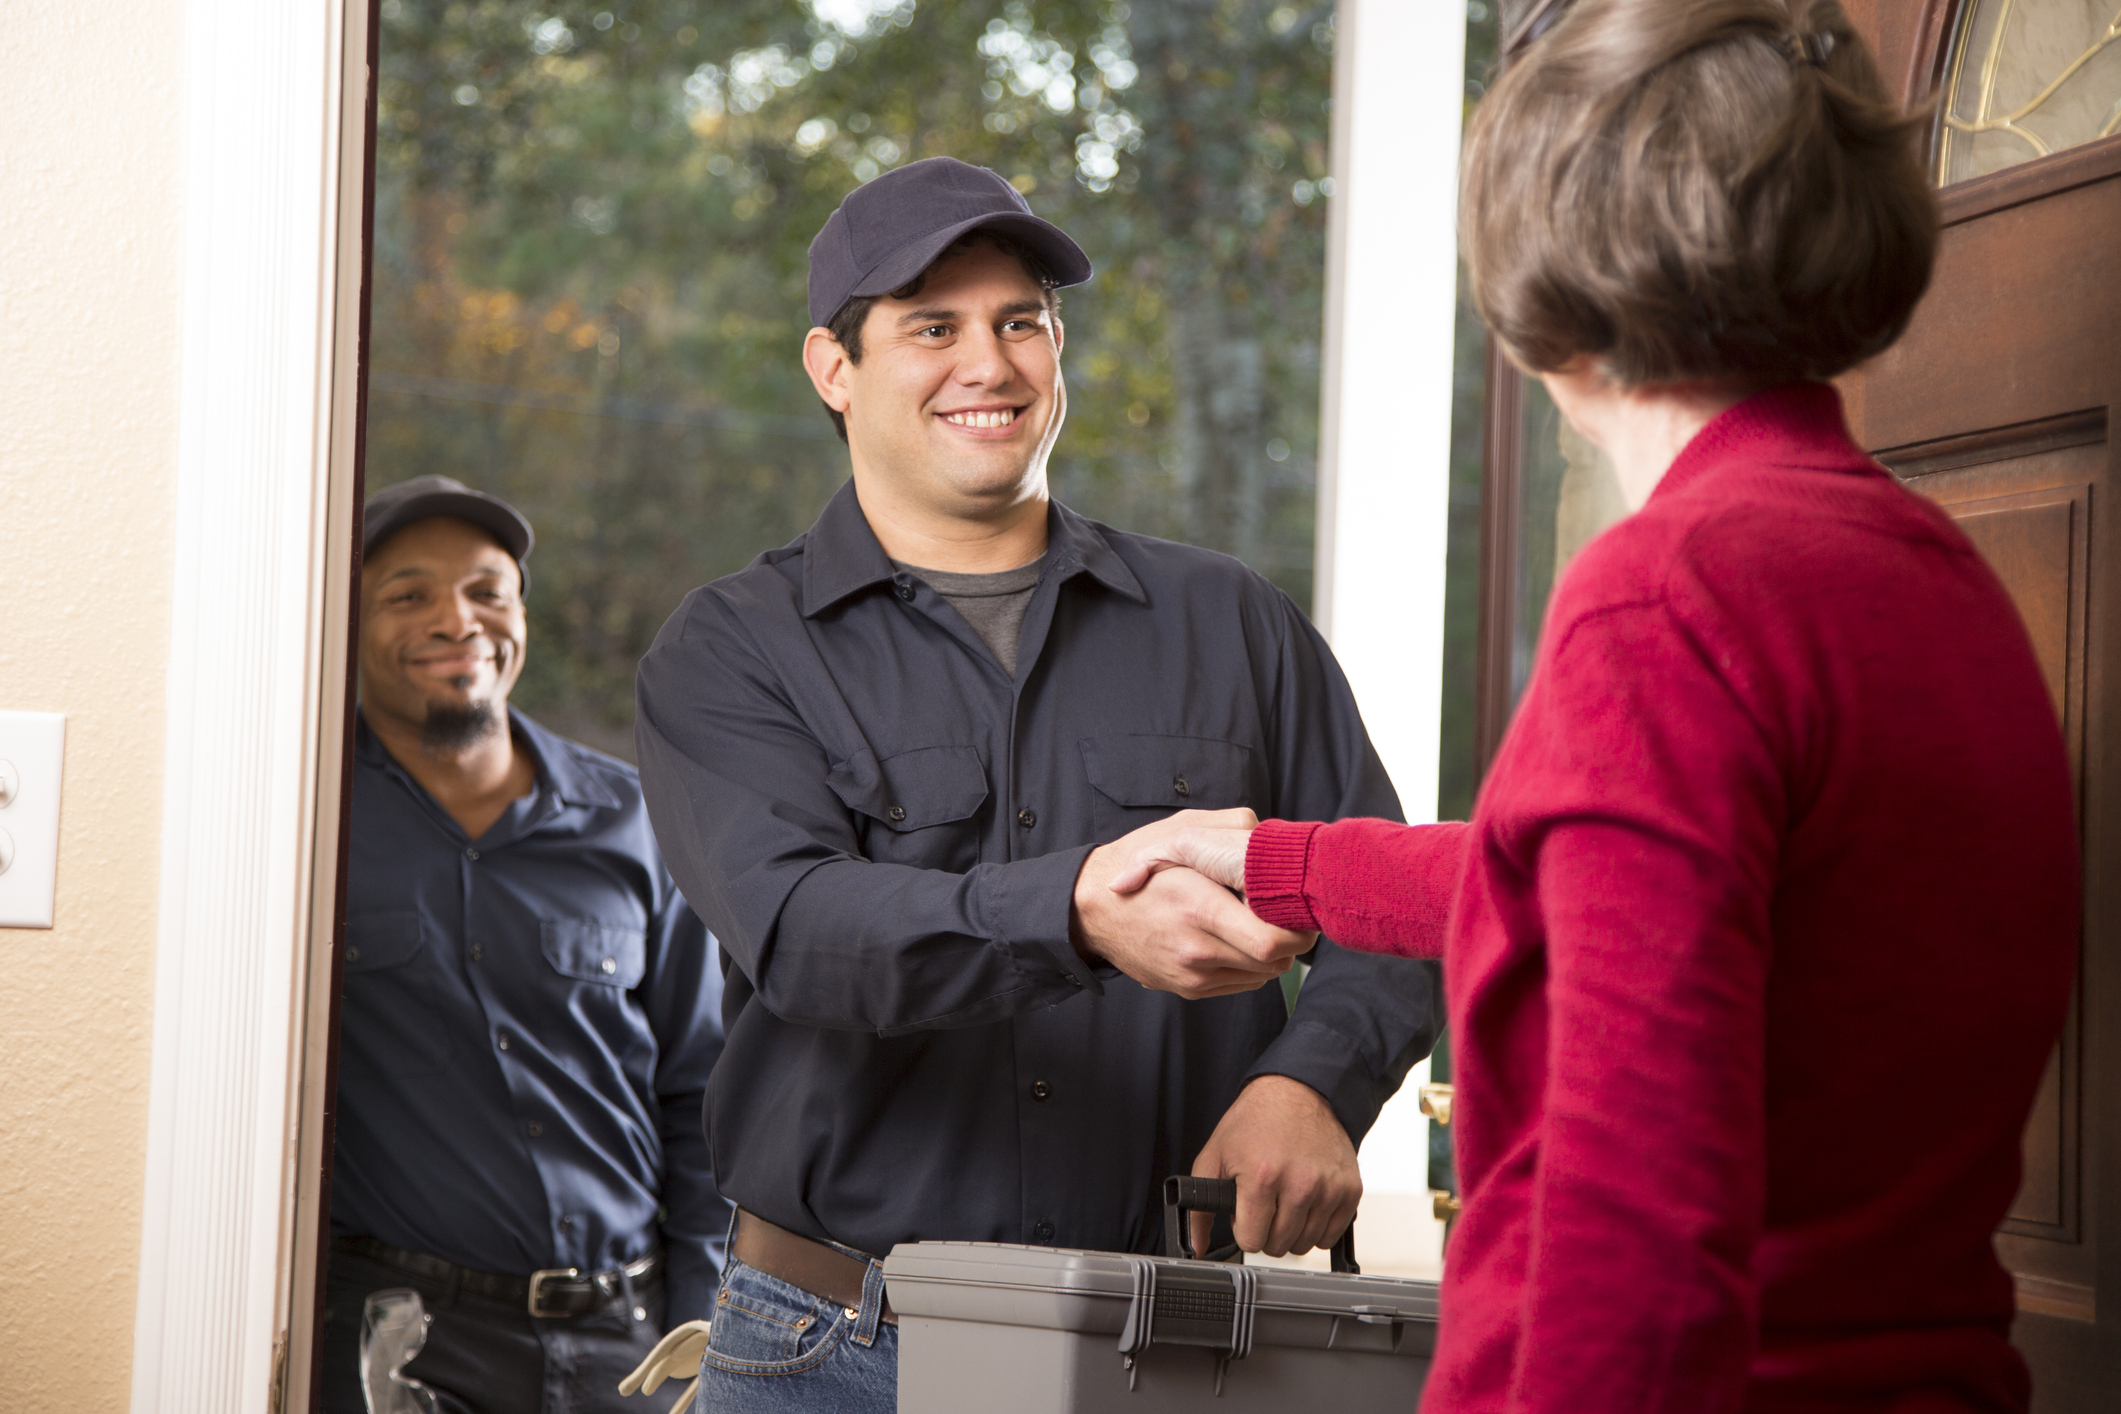 Restoration contractors shake hands with a satisfied customer in her doorway